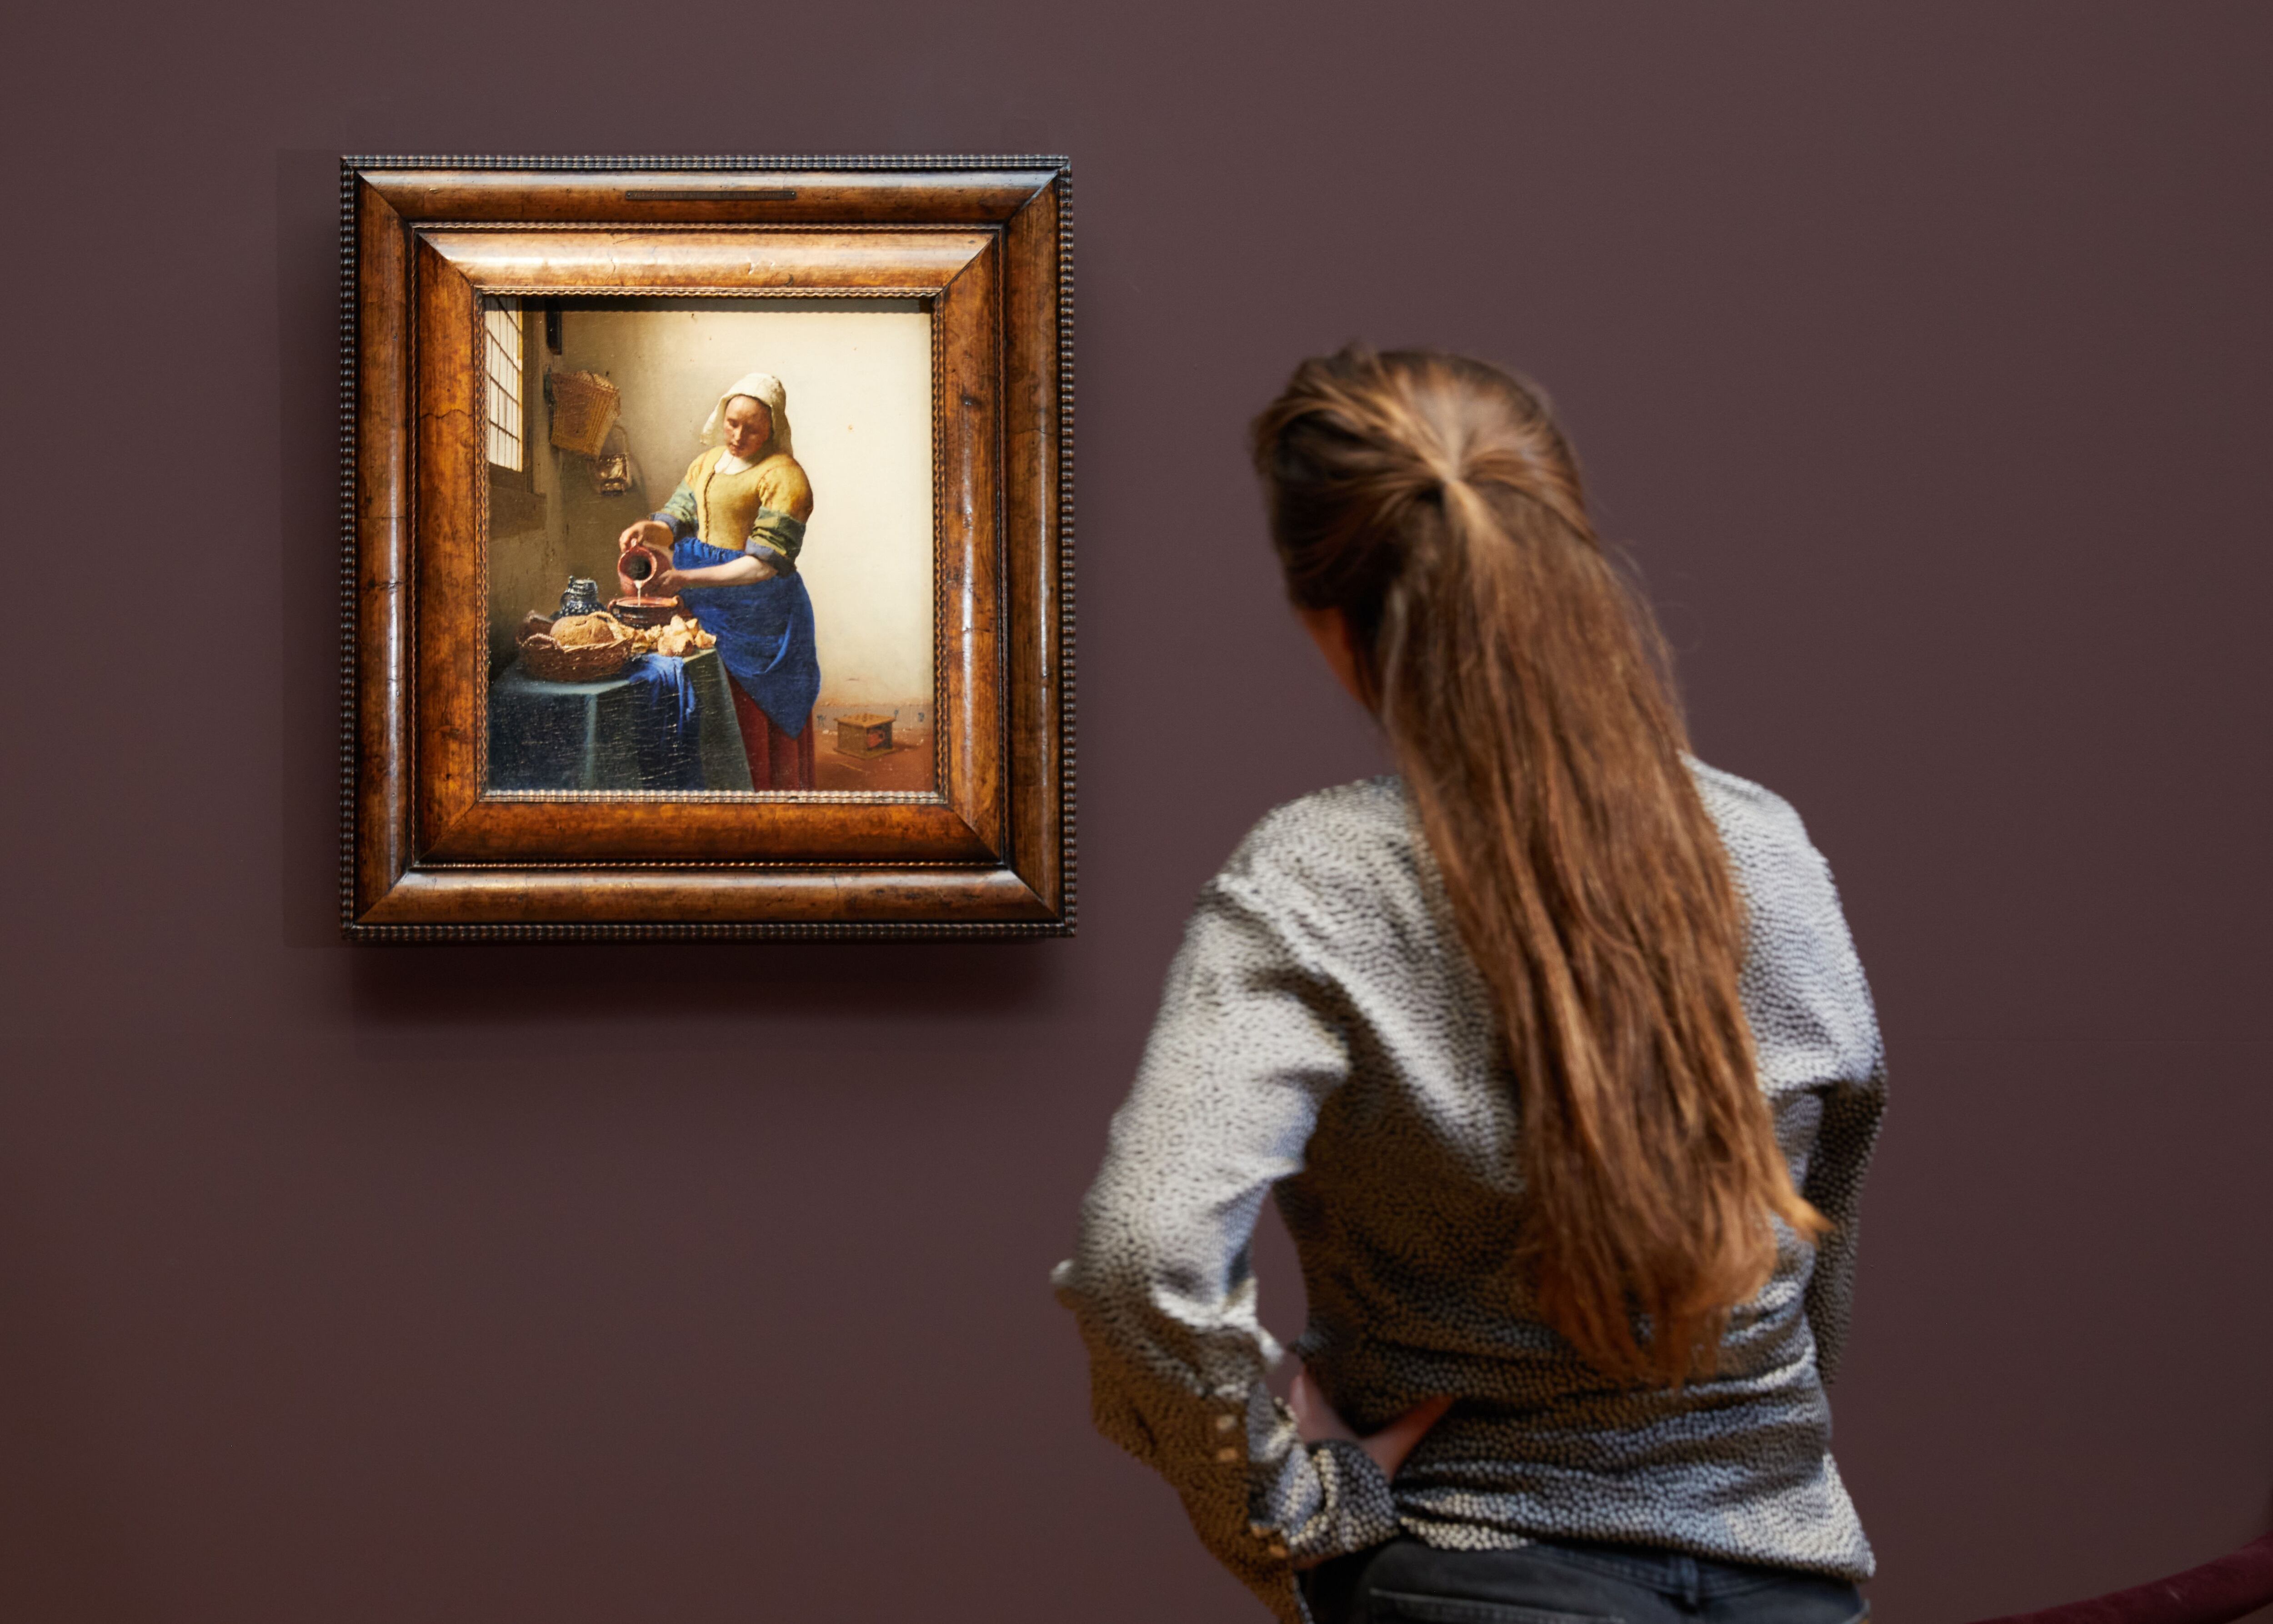 Una visitante observa 'La lechera' de Vermeer en una exposición dedicada al pintor en el Rijksmuseum.